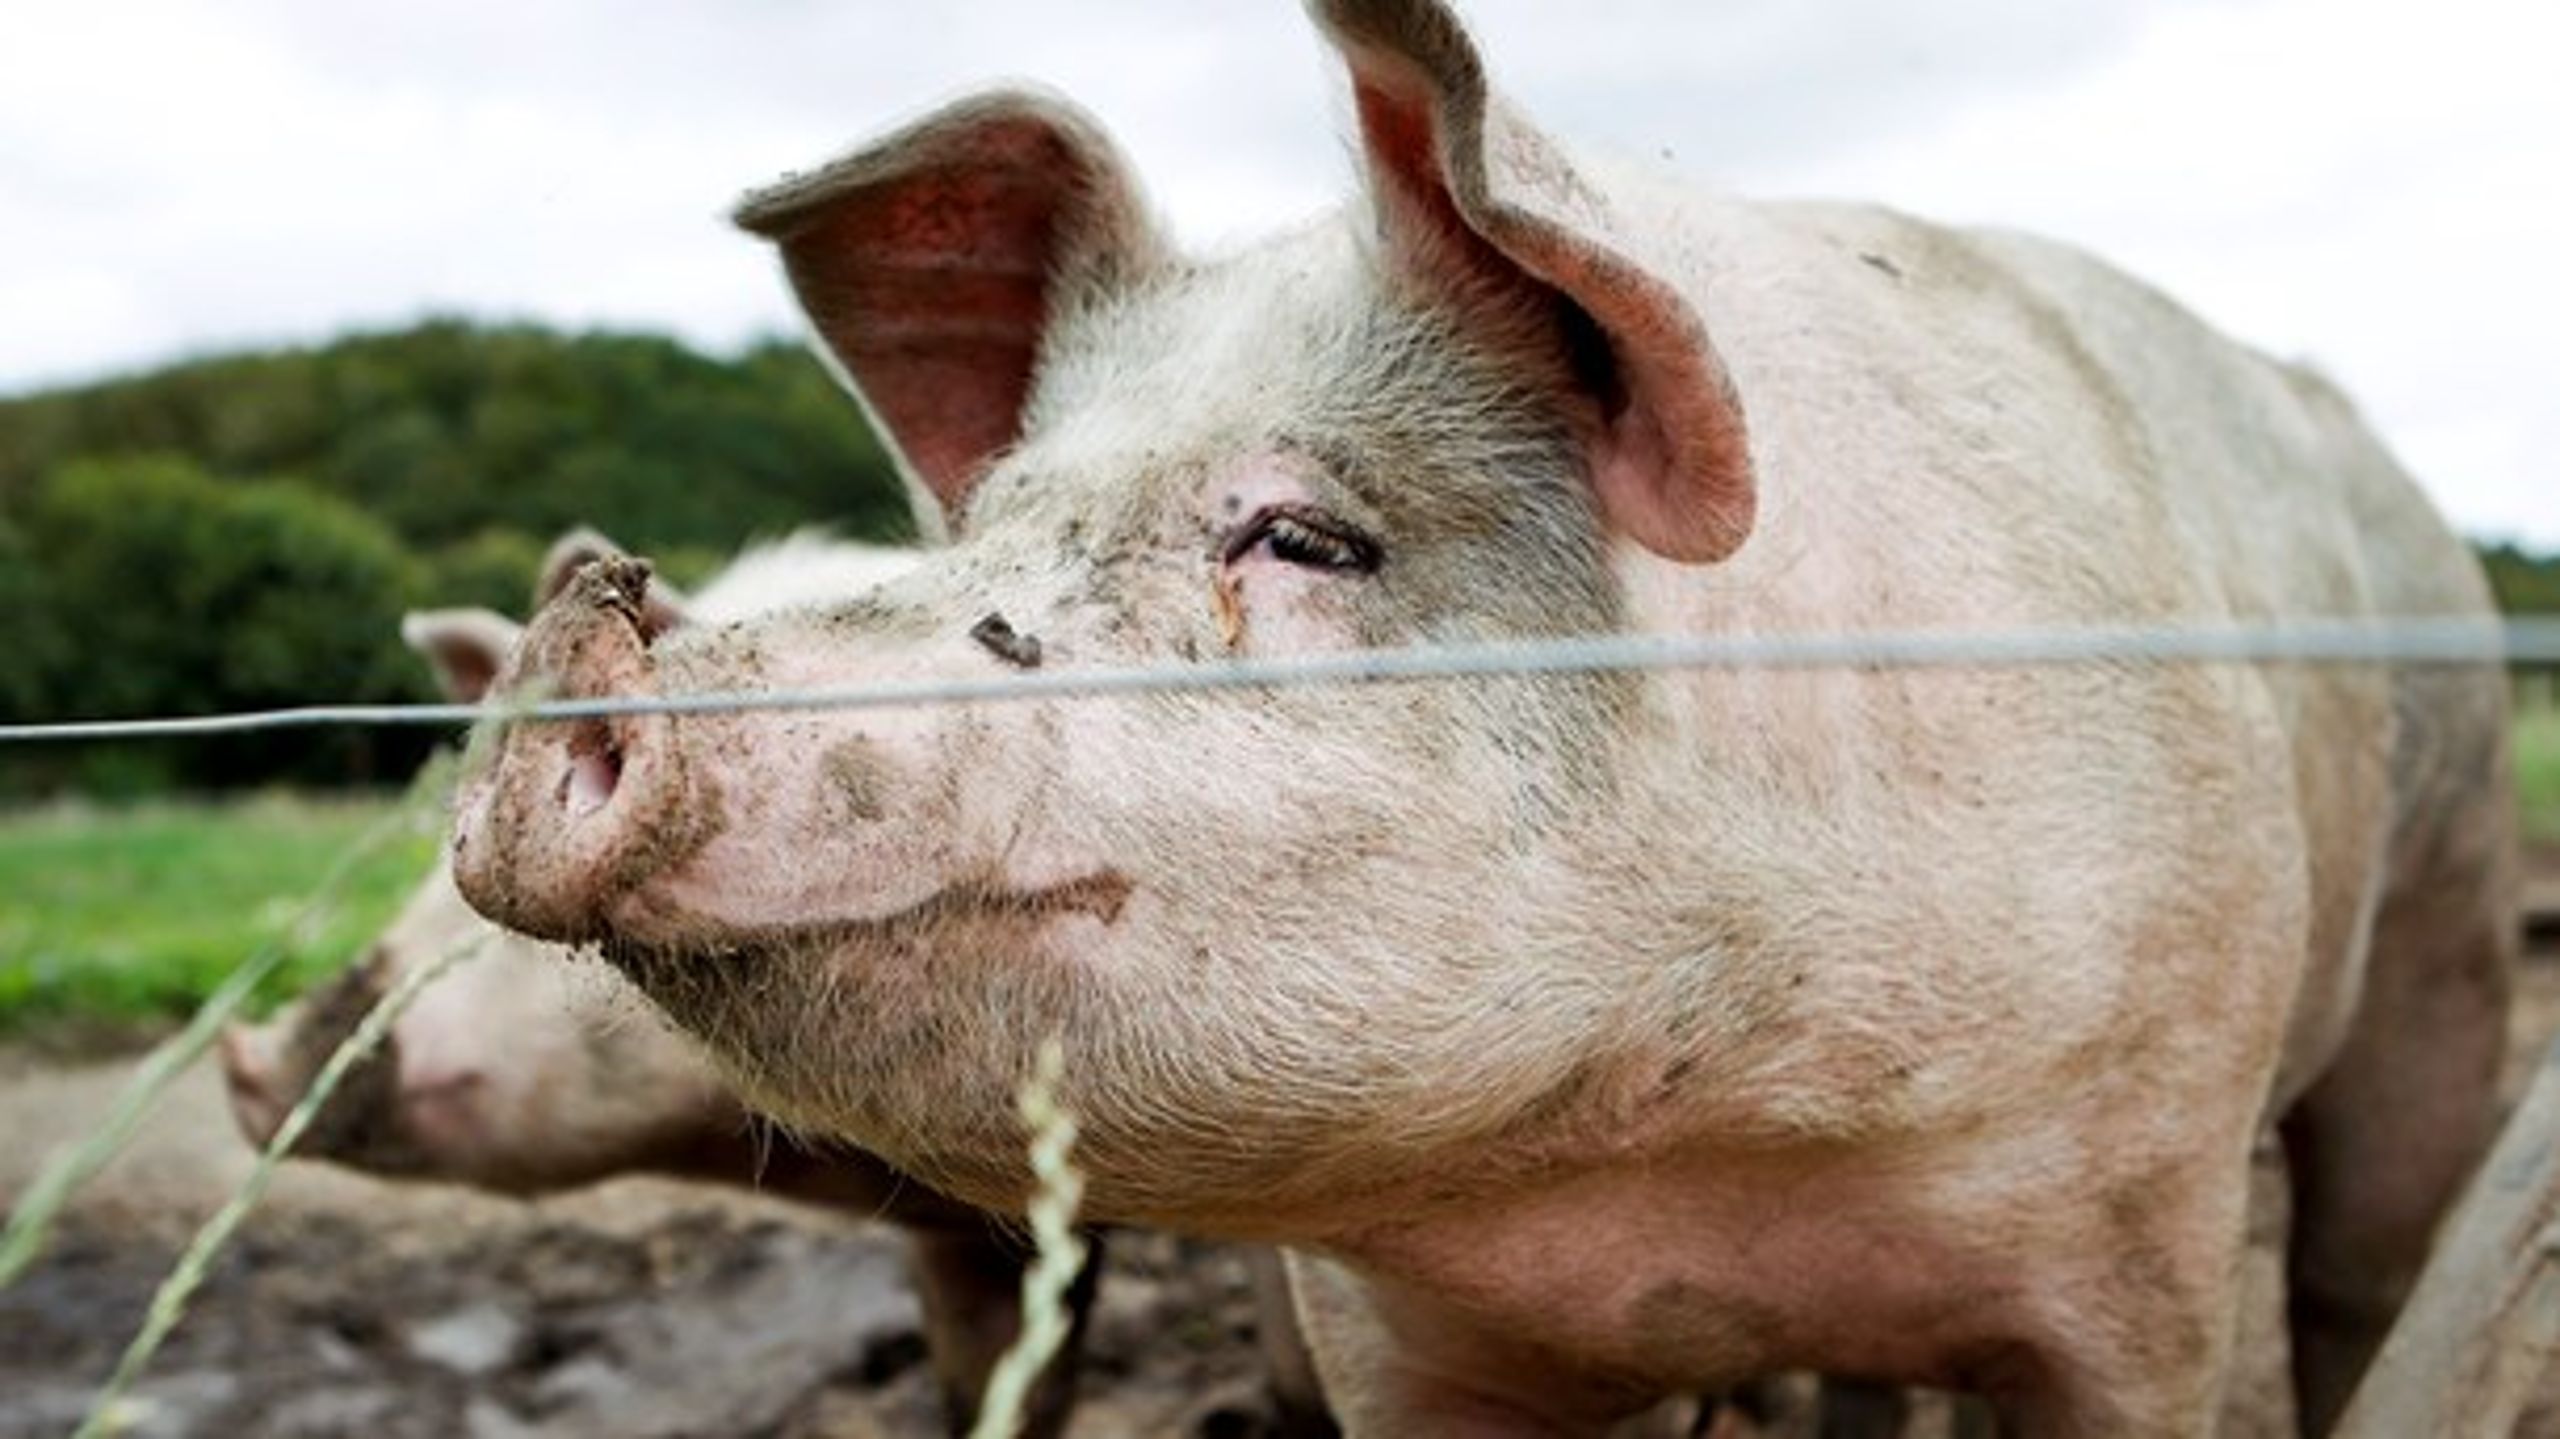 "Esben Lunde (V) luftede for nylig ambitionen om at fordoble Danmarks produktion af svin. Hvis det udleves, vil vi kun se forværringer af natur- og miljøproblemerne, selv om ministeren gør sig umage med at pakke det grønt ind," skriver Birgitte Lesanner.